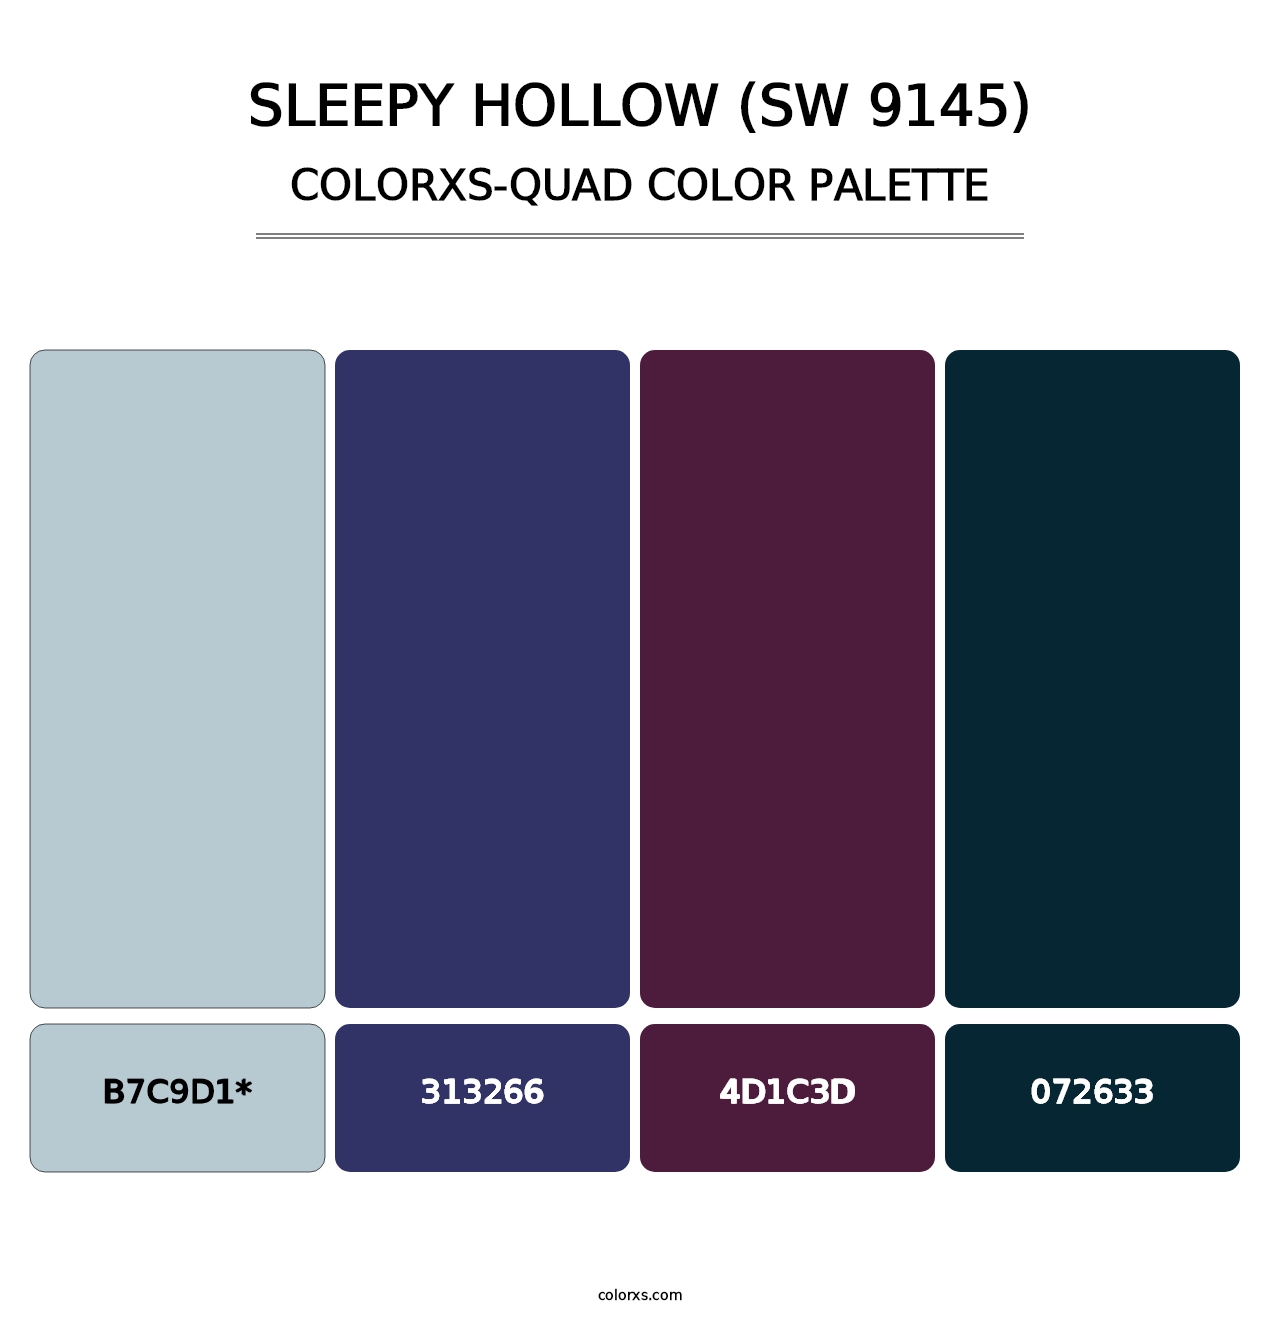 Sleepy Hollow (SW 9145) - Colorxs Quad Palette